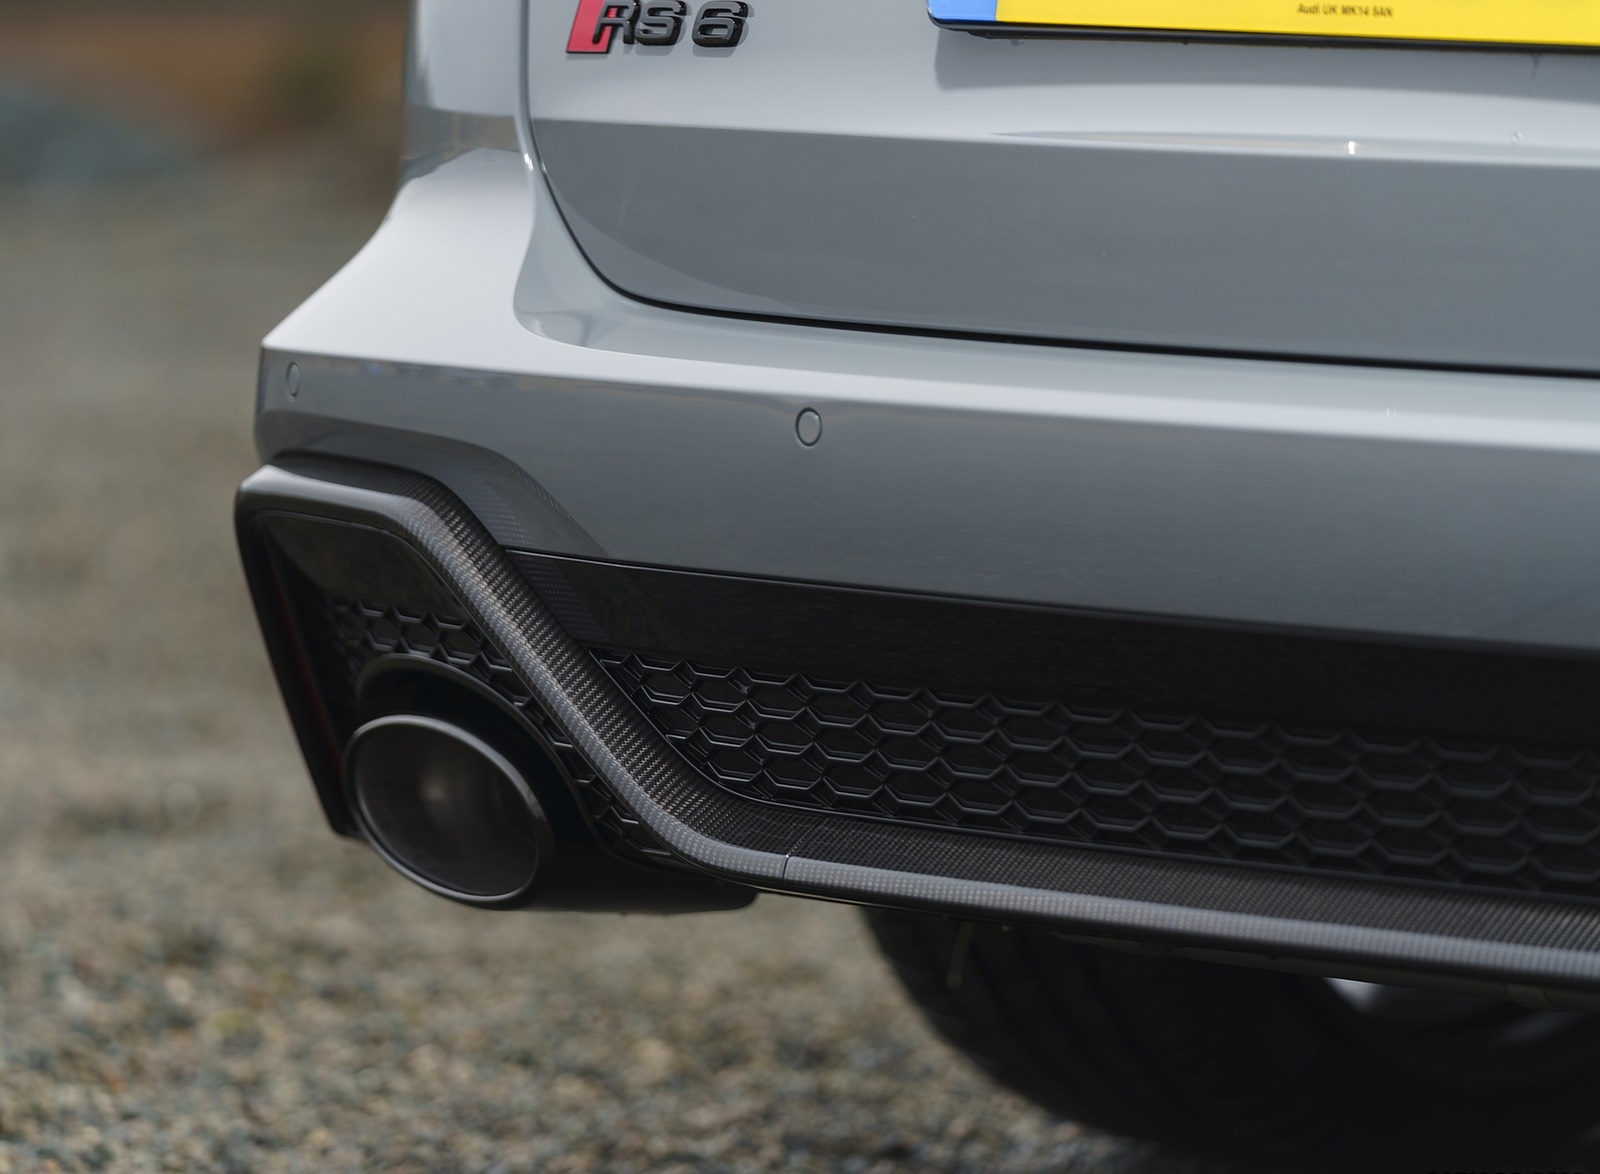 2020 Audi RS 6 Avant (UK-Spec) Exhaust Wallpapers #102 of 146